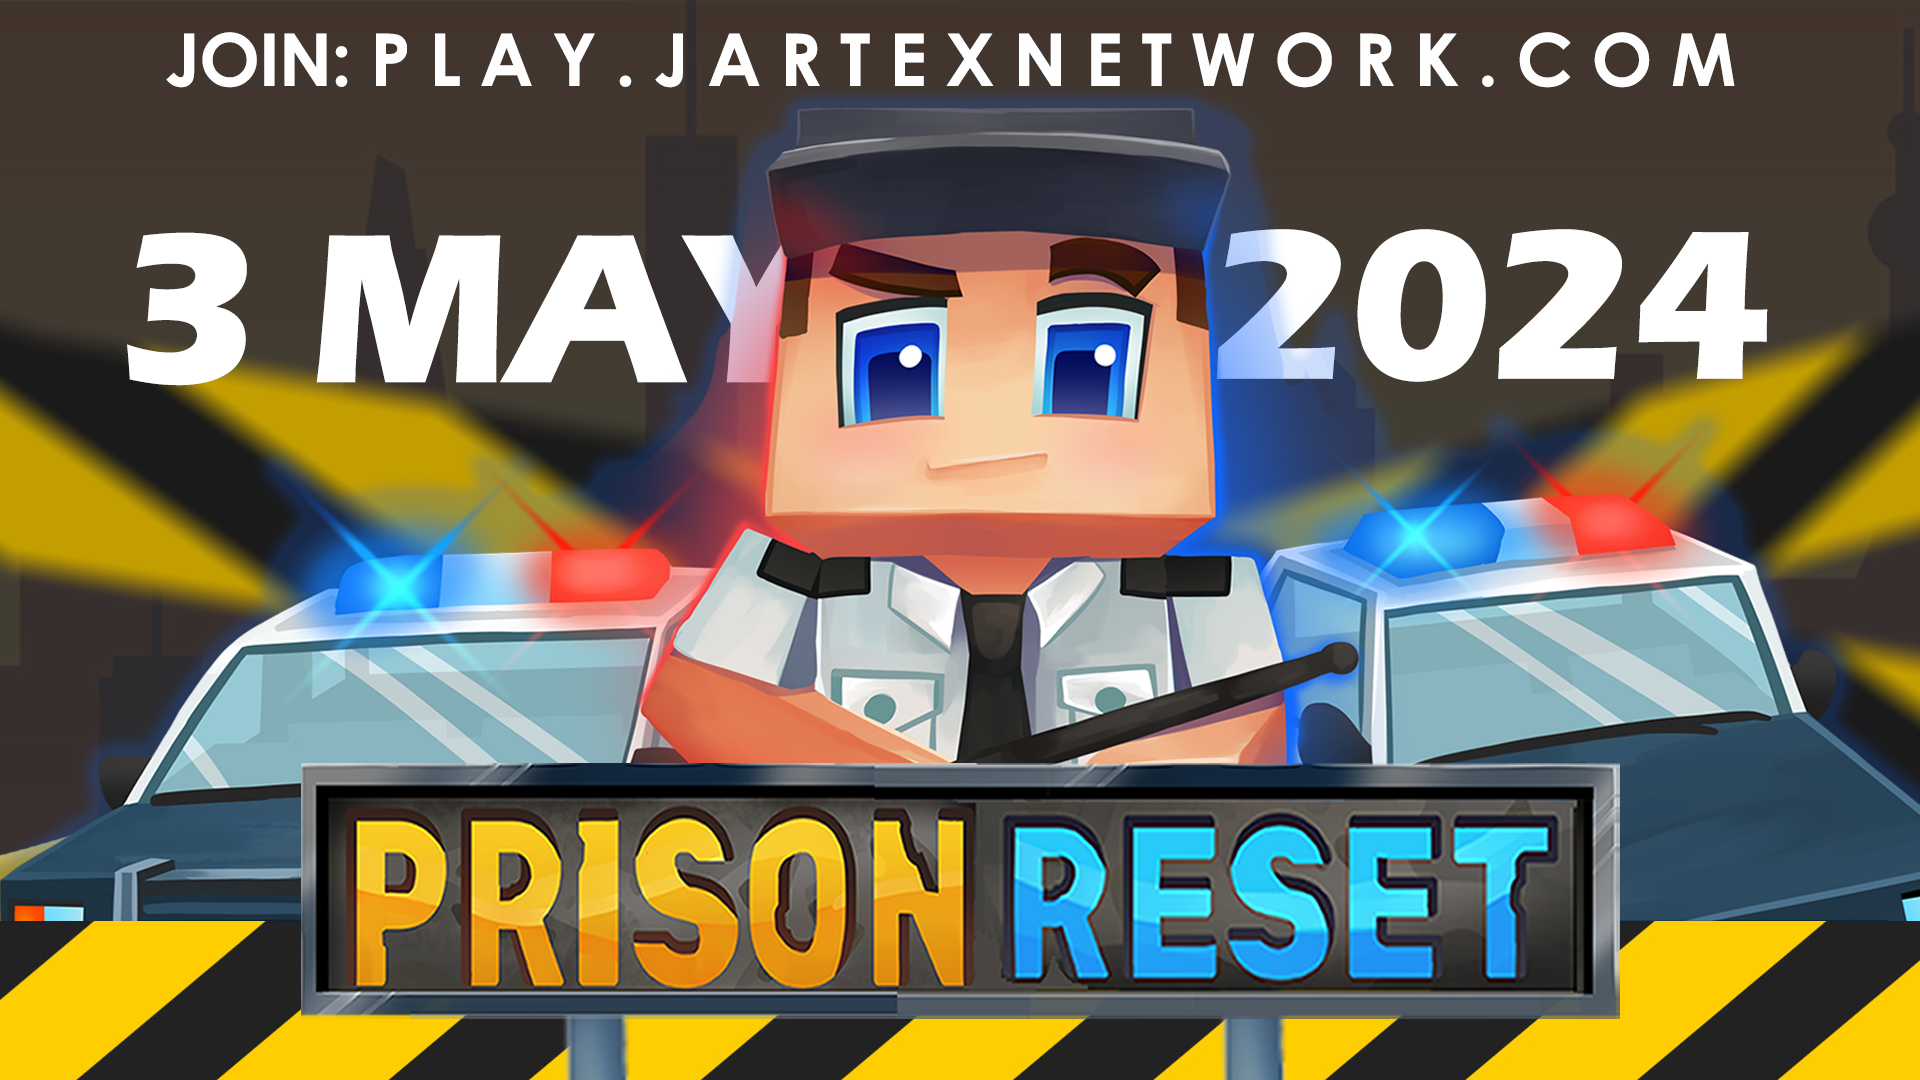 jartexprisonreset.png